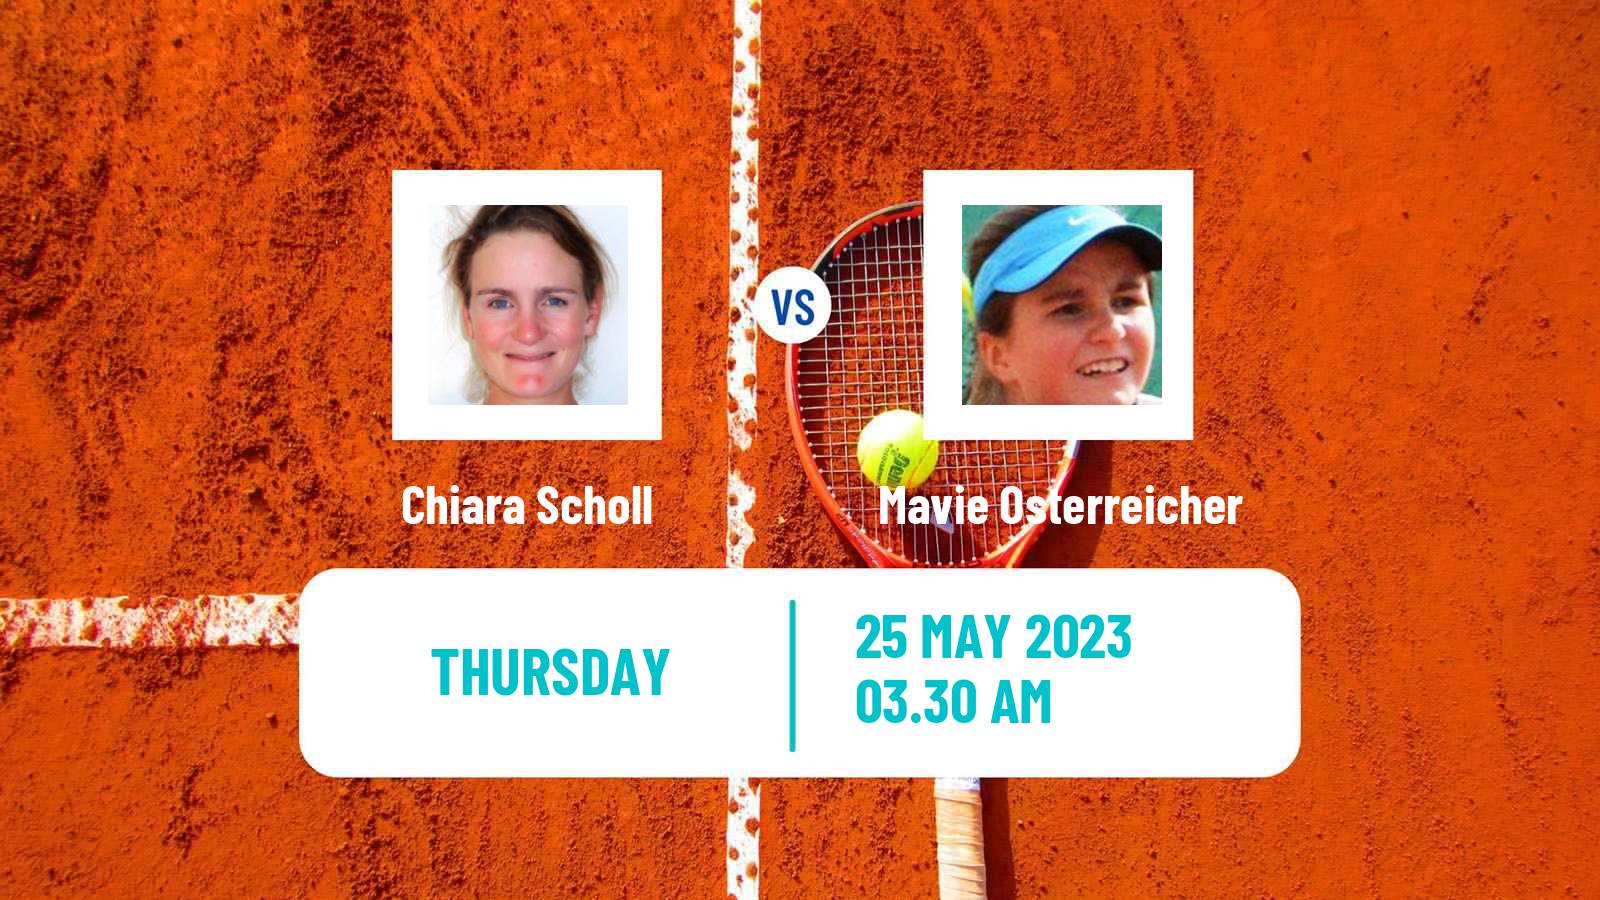 Tennis ITF W25 Warmbad Villach Women Chiara Scholl - Mavie Osterreicher